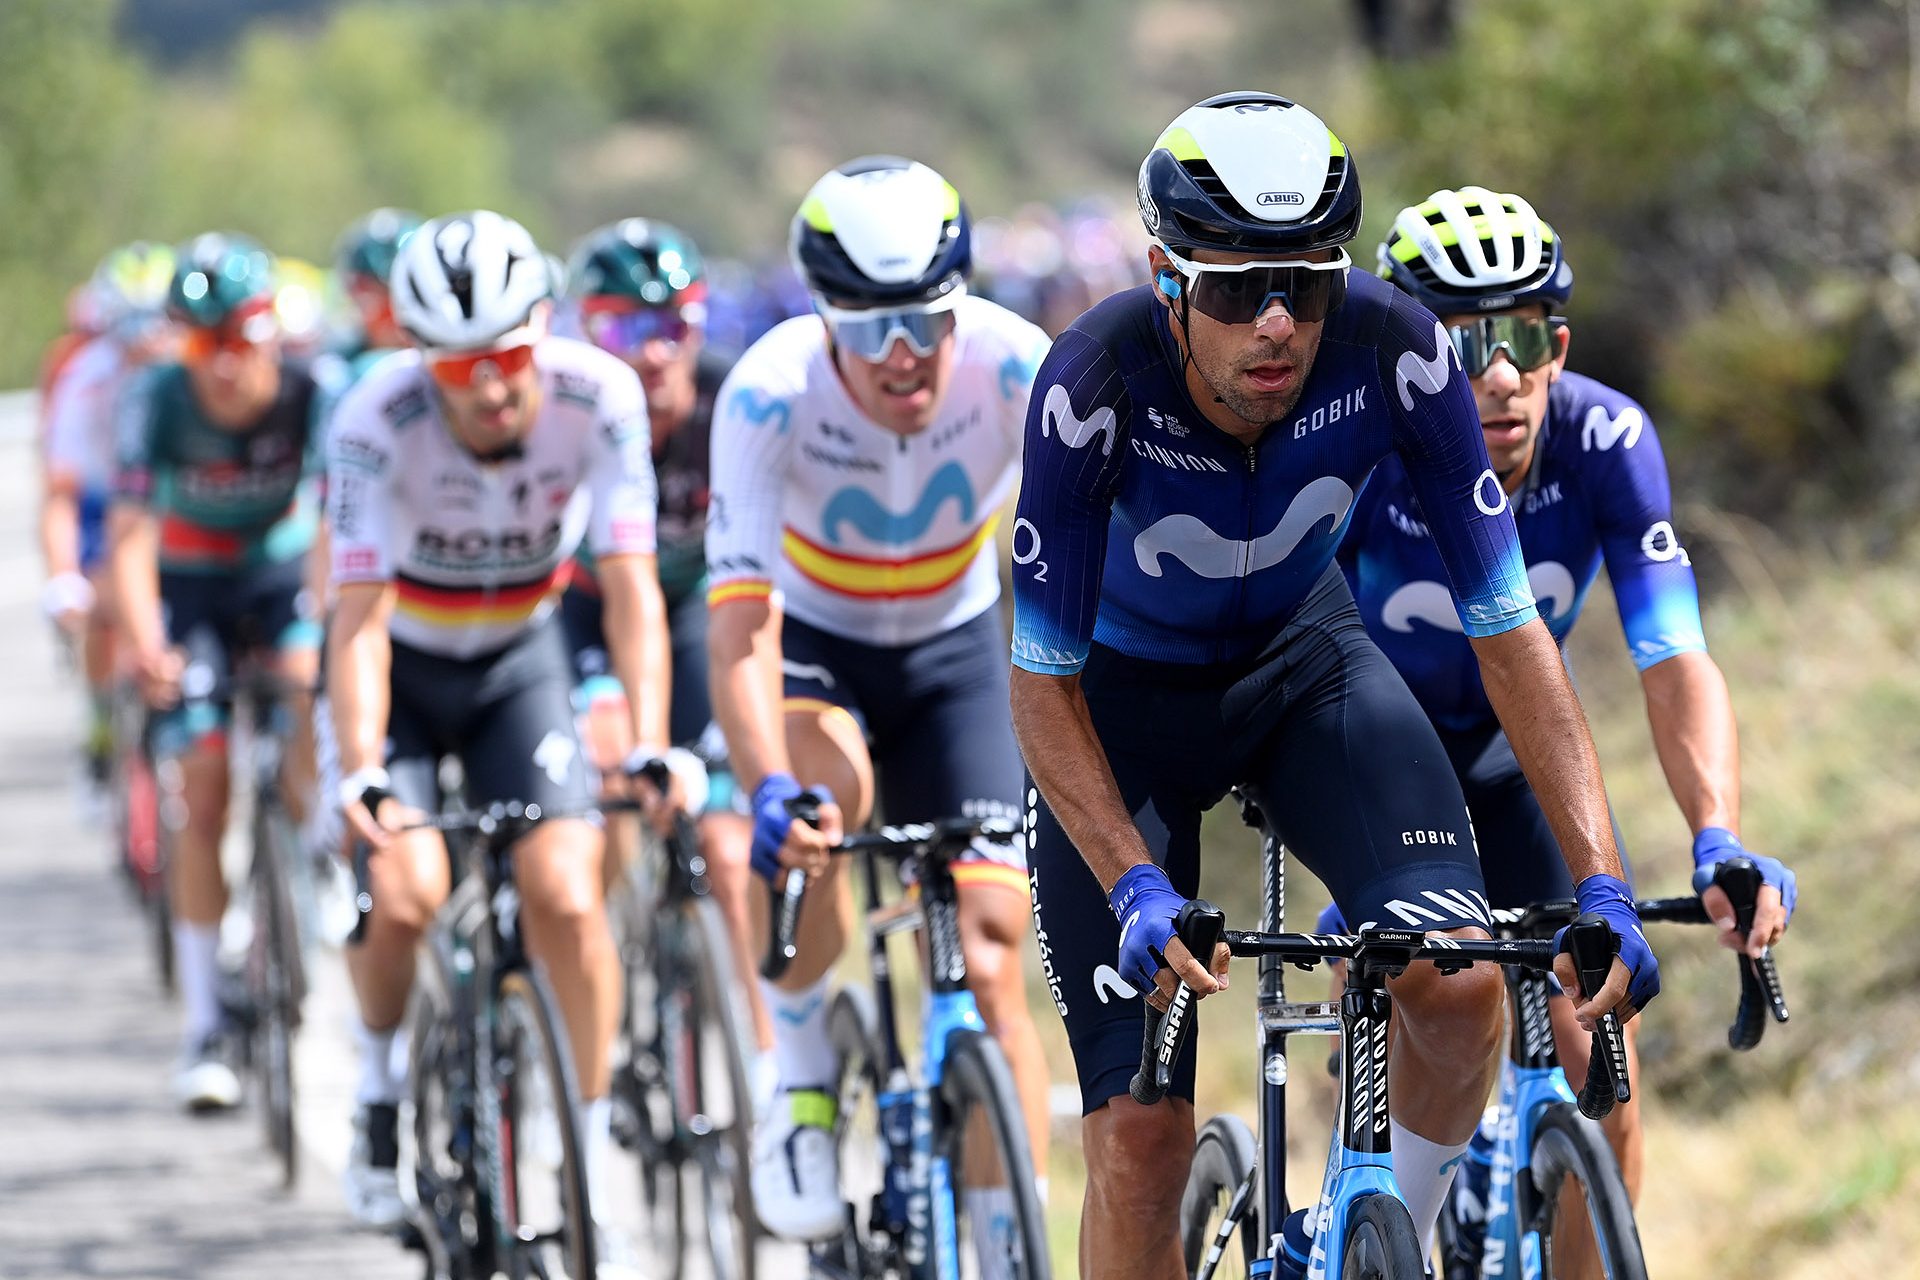 Radsport: Movistar Team scheitert auch bei der Vuelta a España